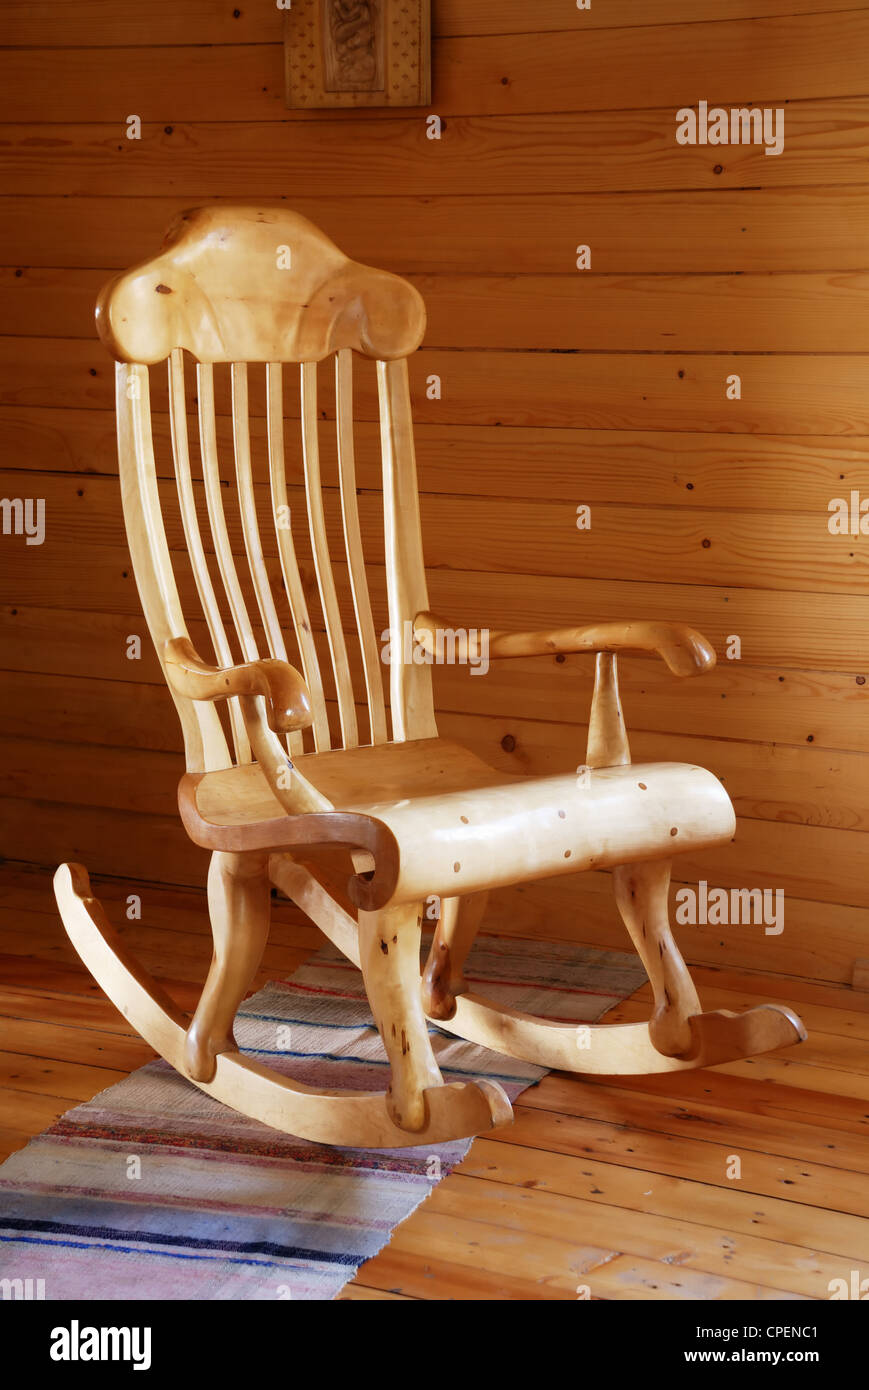 geschnitzte Holz Schaukelstuhl im Landhausstil Innenraum Stockfotografie -  Alamy